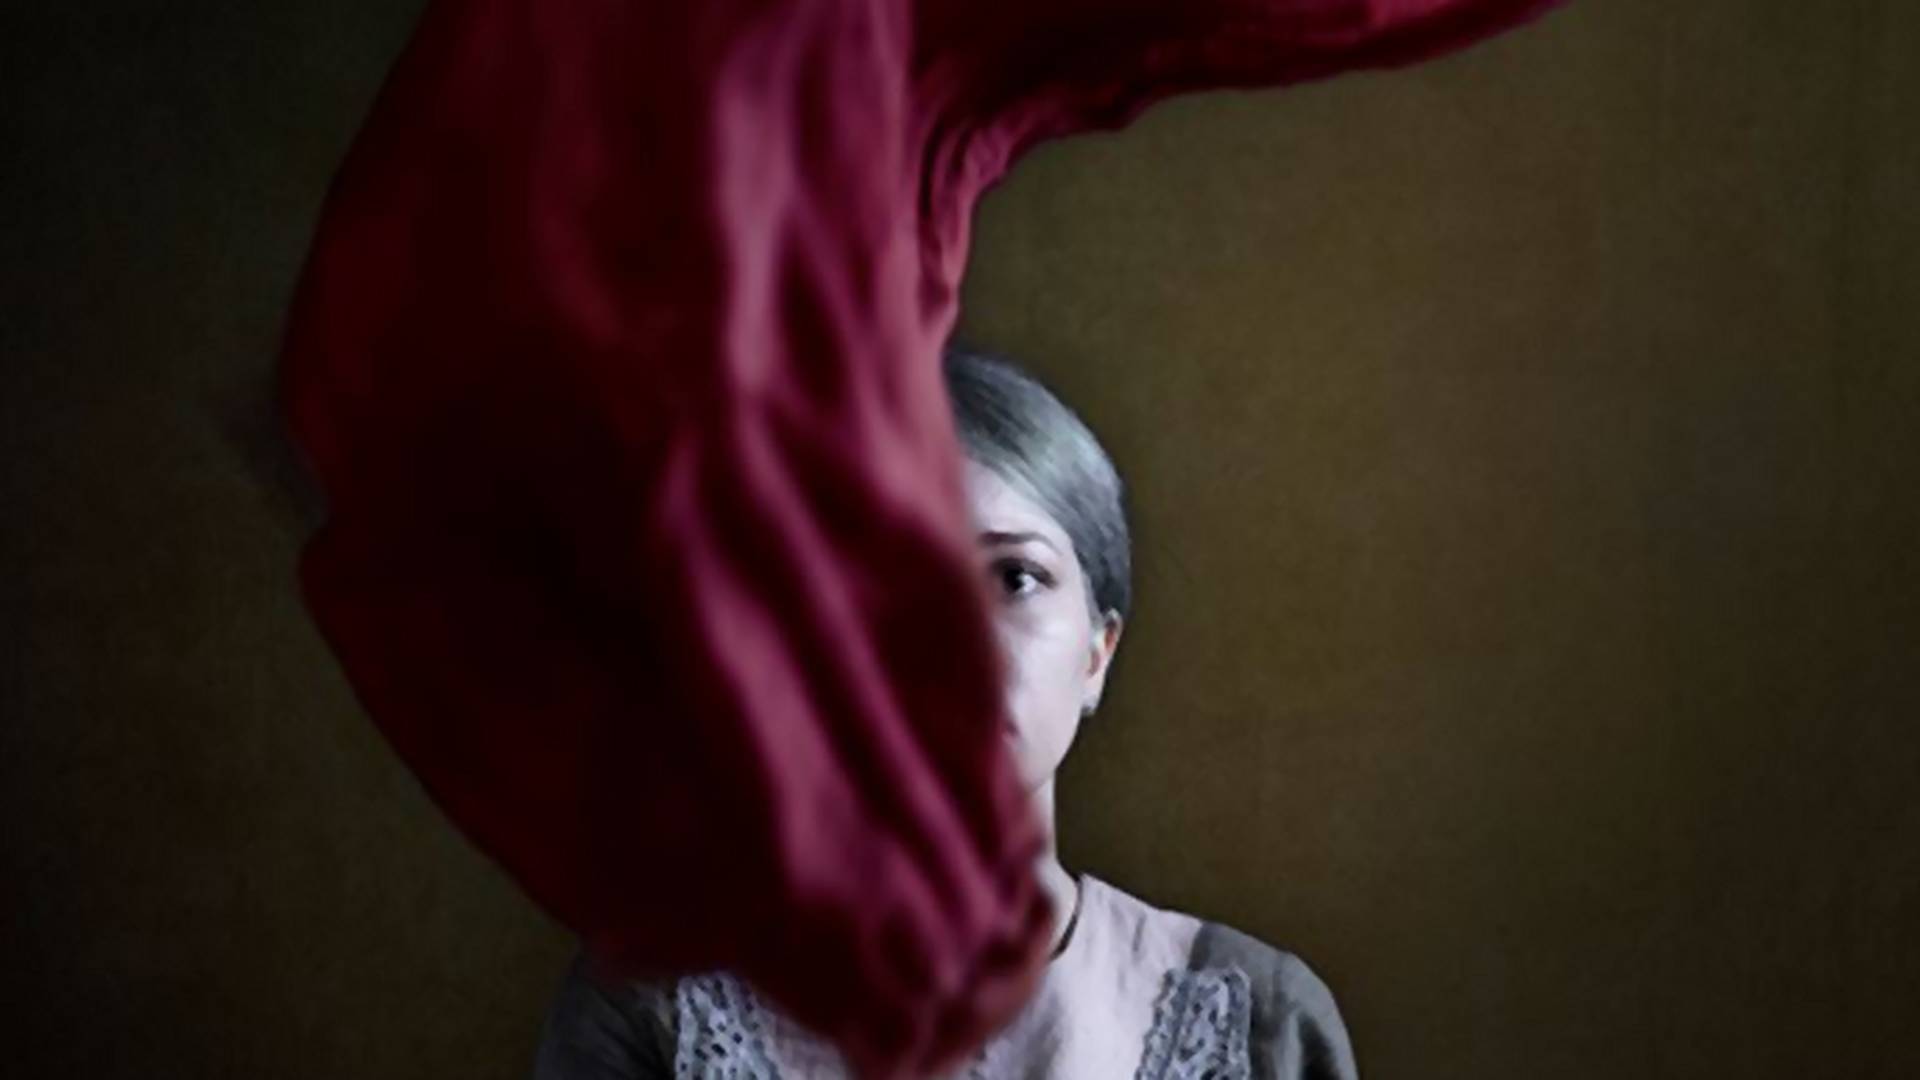 Ez sokkal több, mint bátor iráni nők kihívása az őket elnyomó rendszer ellen - Fotósorozat